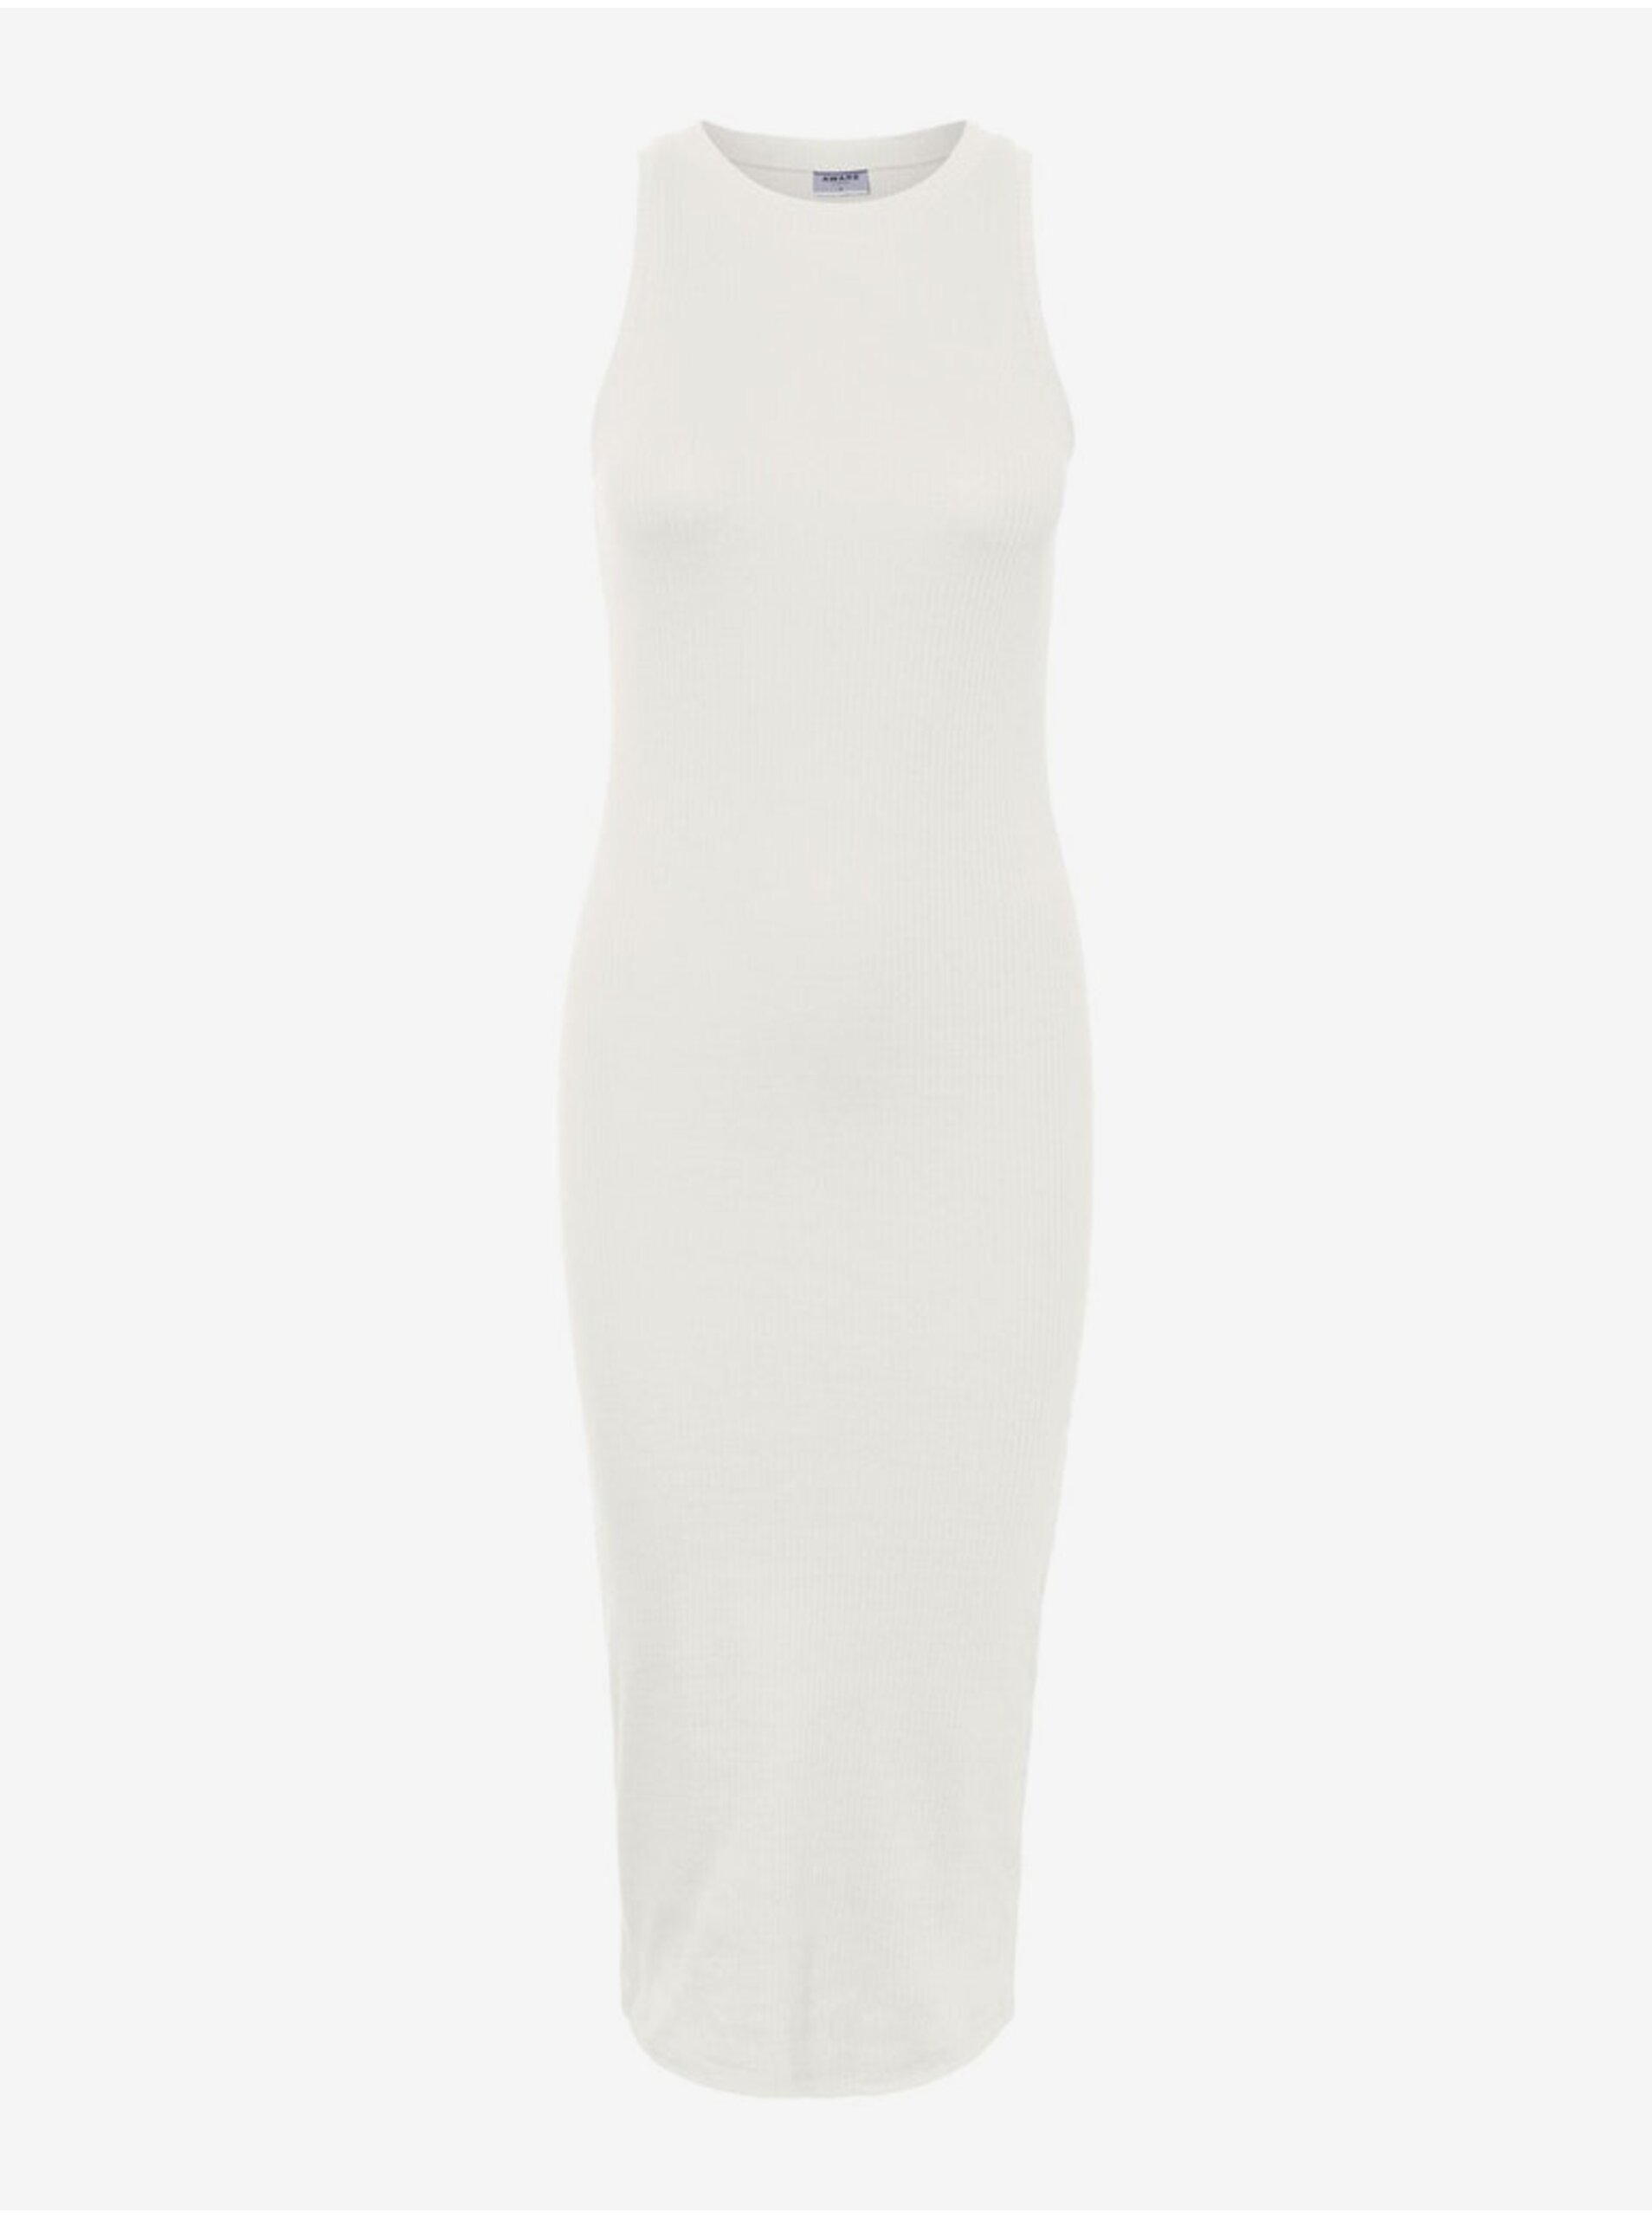 E-shop Bílé dámské pouzdrové basic šaty AWARE by VERO MODA Lavender